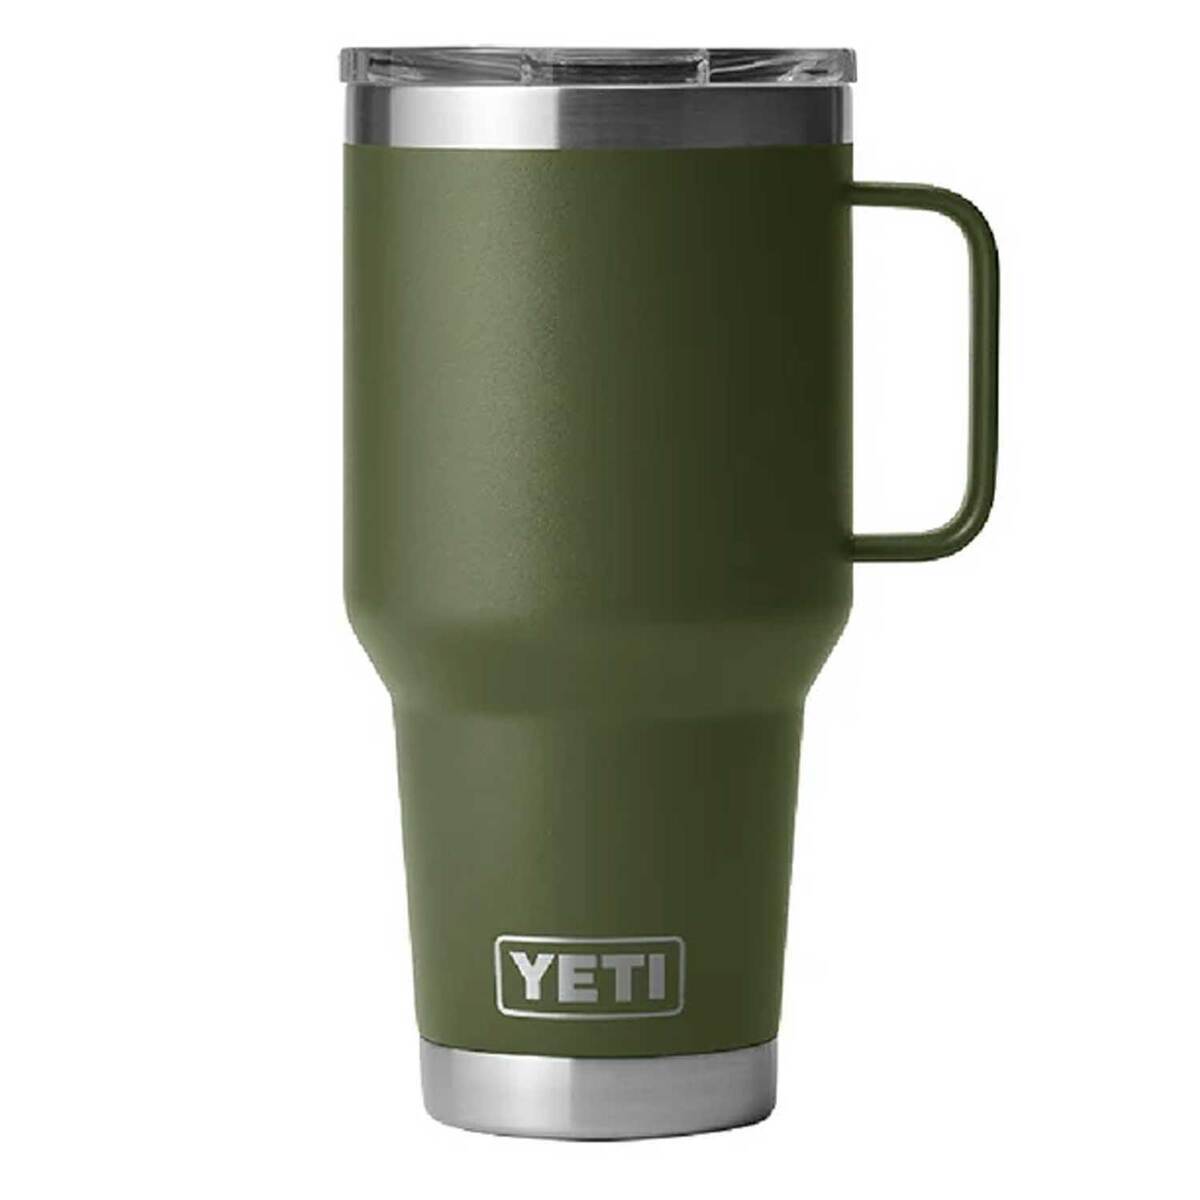 YETI Rambler 30 oz Travel Mug with Stronghold Lid - Highlands Olive ...